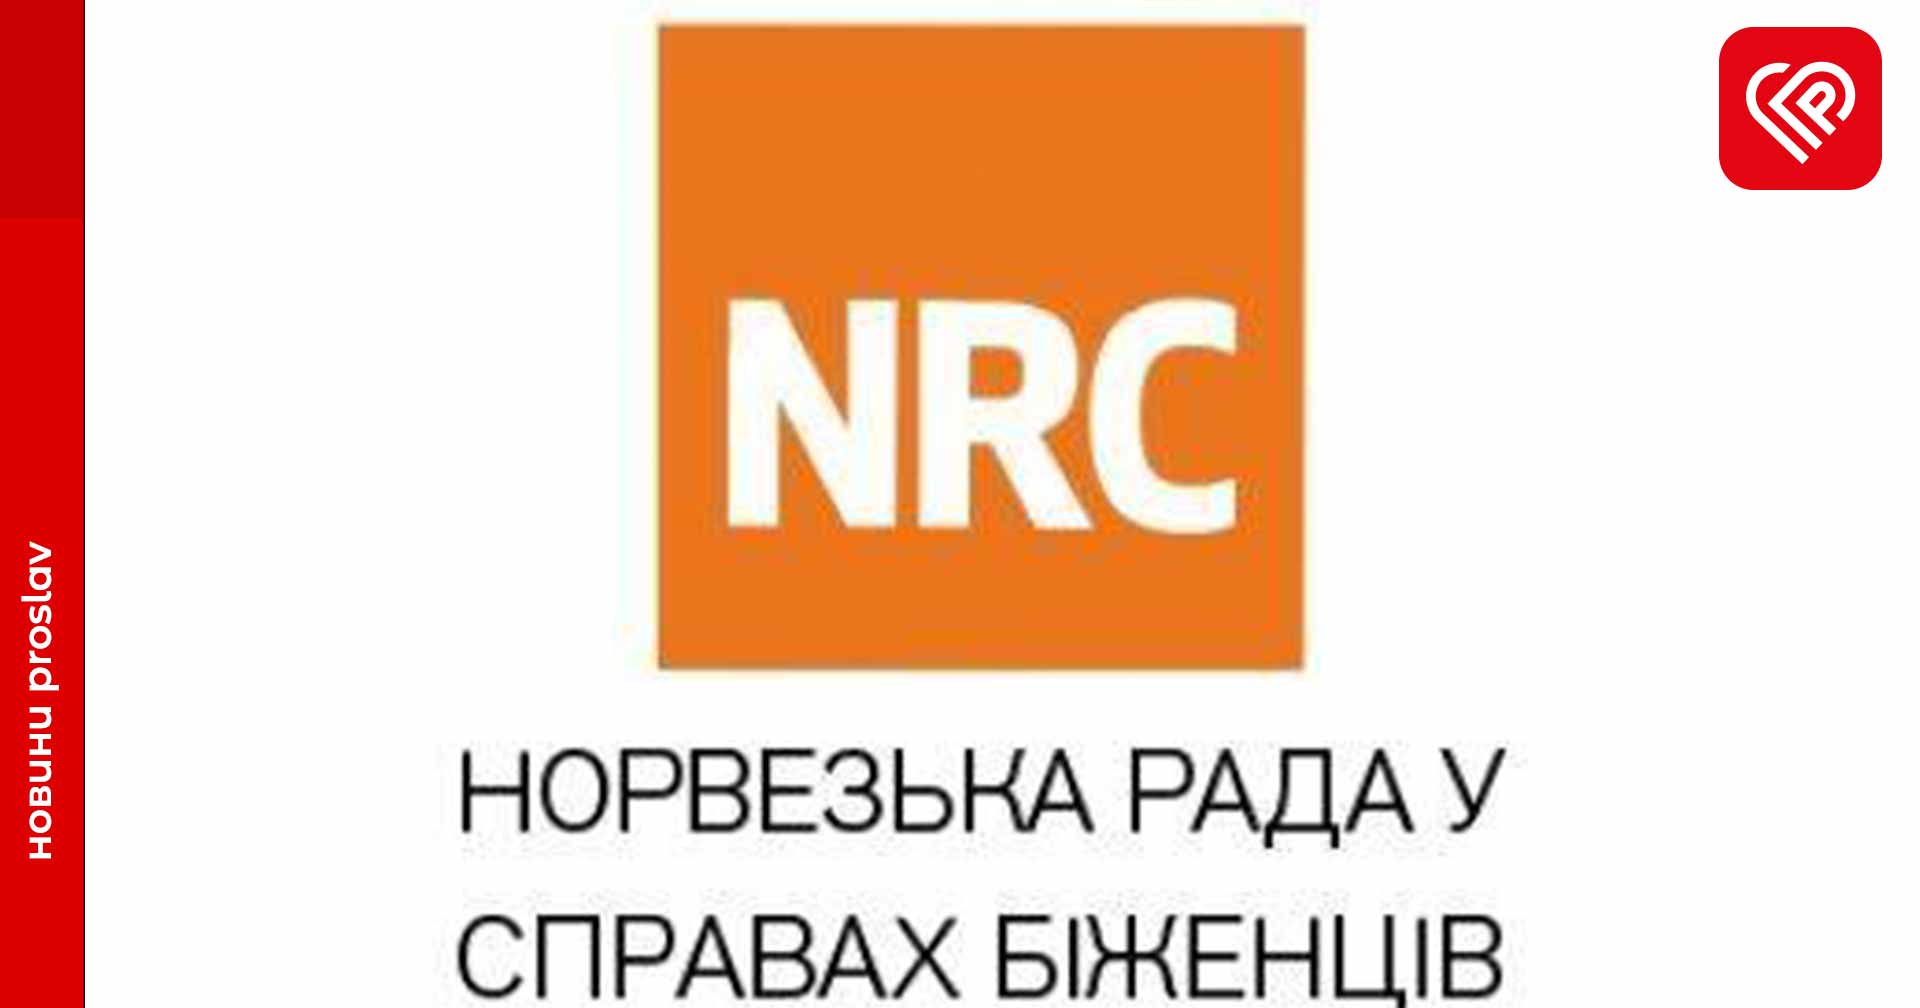 Норвезька рада у справах біженців в Україні пропонує свої послуги для ВПО в Переяславі